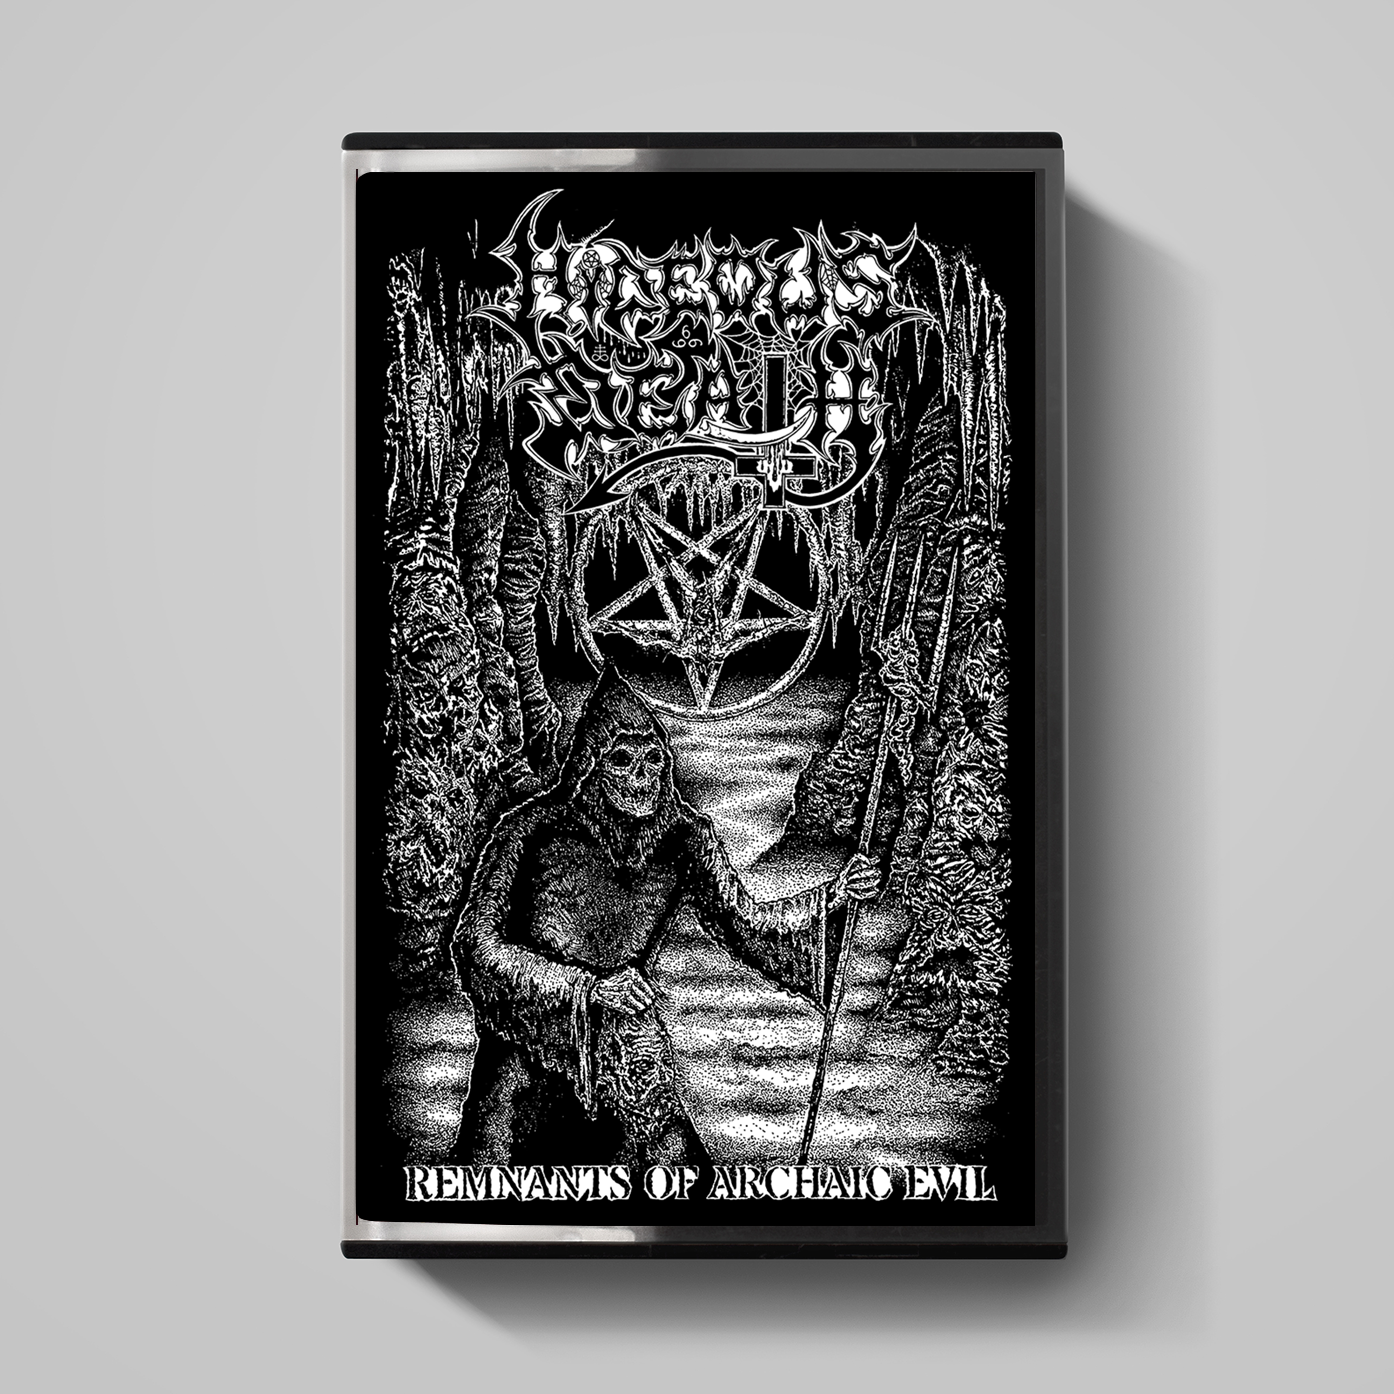 Hideous Death - Remnants of Archaic Evil Cassette